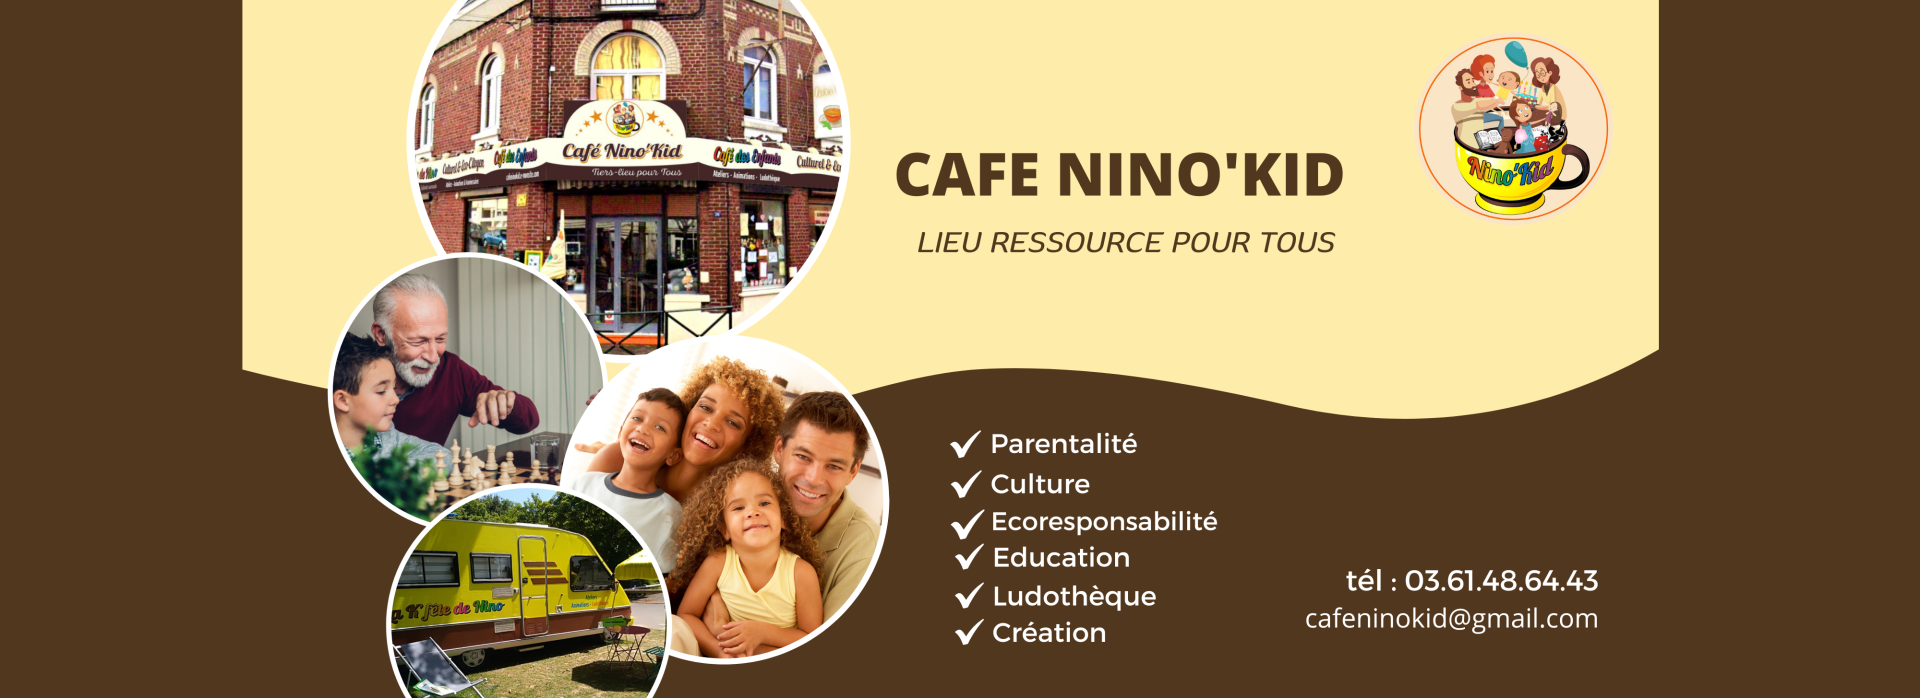 Café Nino'Kid - Café des Enfants Culturel et Ecocitoyen